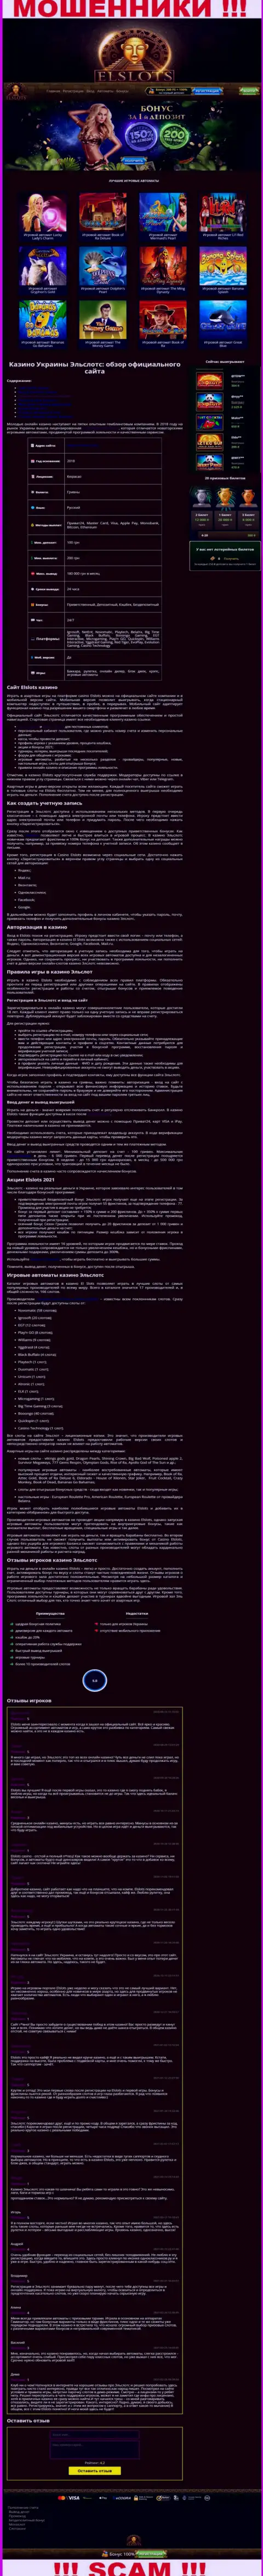 Вид официальной web-страницы противоправно действующей организации Ел Слотс